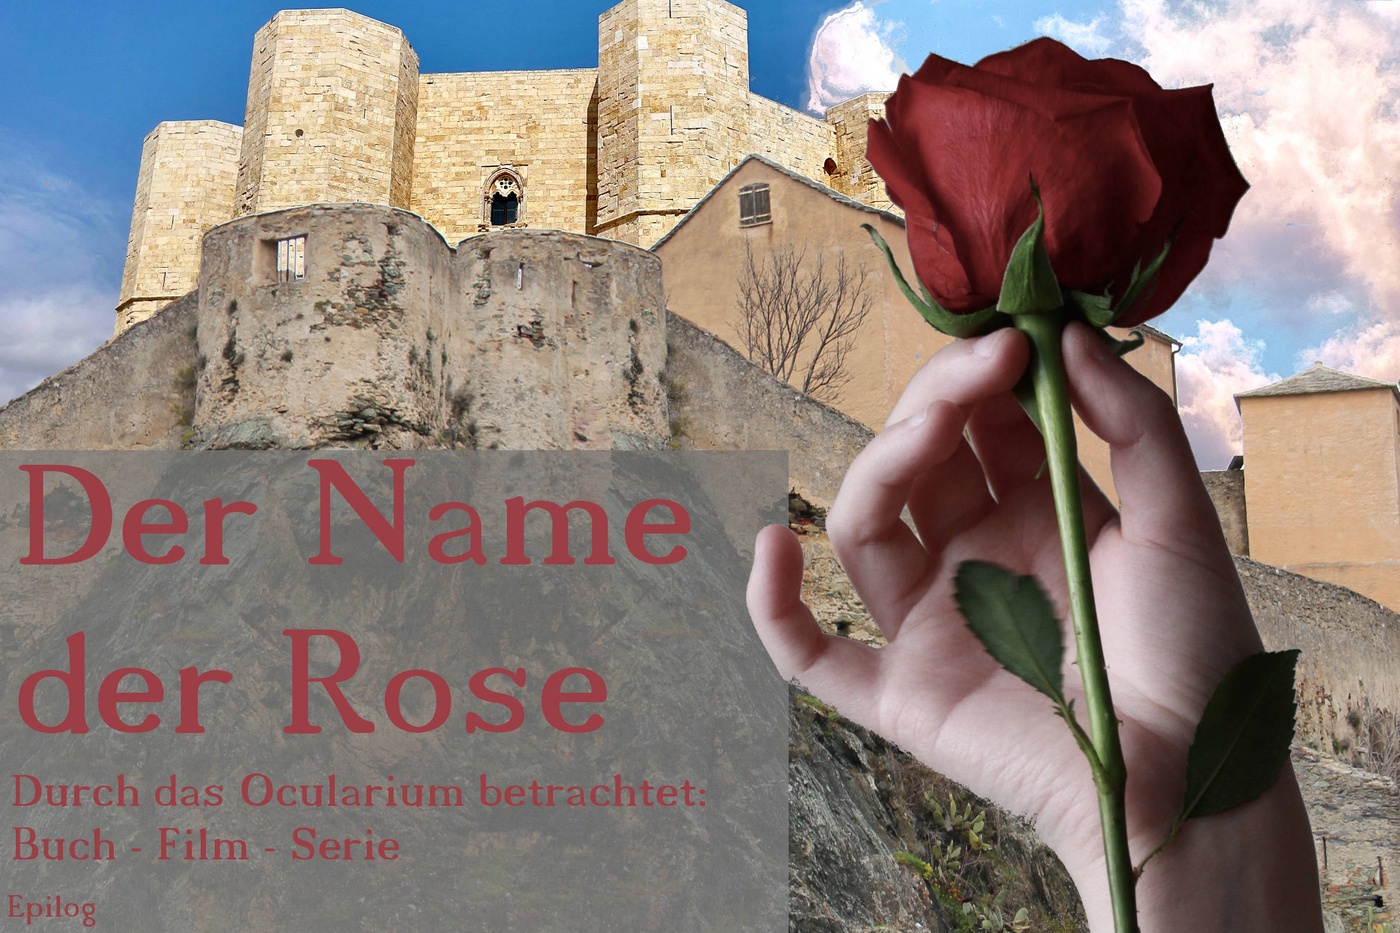 Der Name der Rose - Durch das Ocularium betrachtet: Buch - Film - Serie (10)